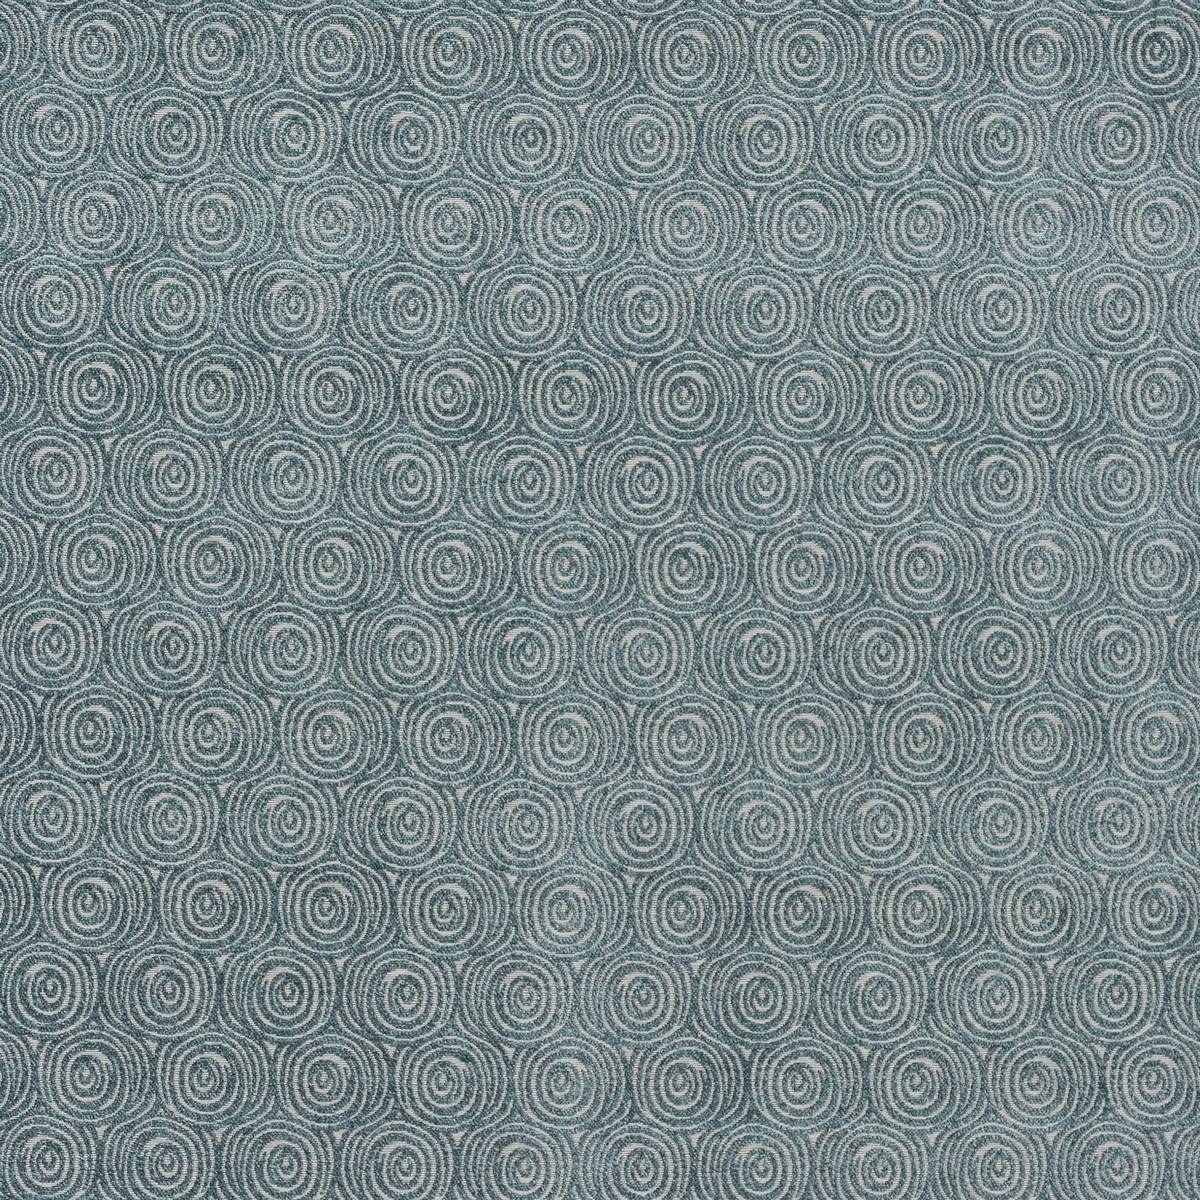 Odyssey Seafoam Fabric by Fryetts